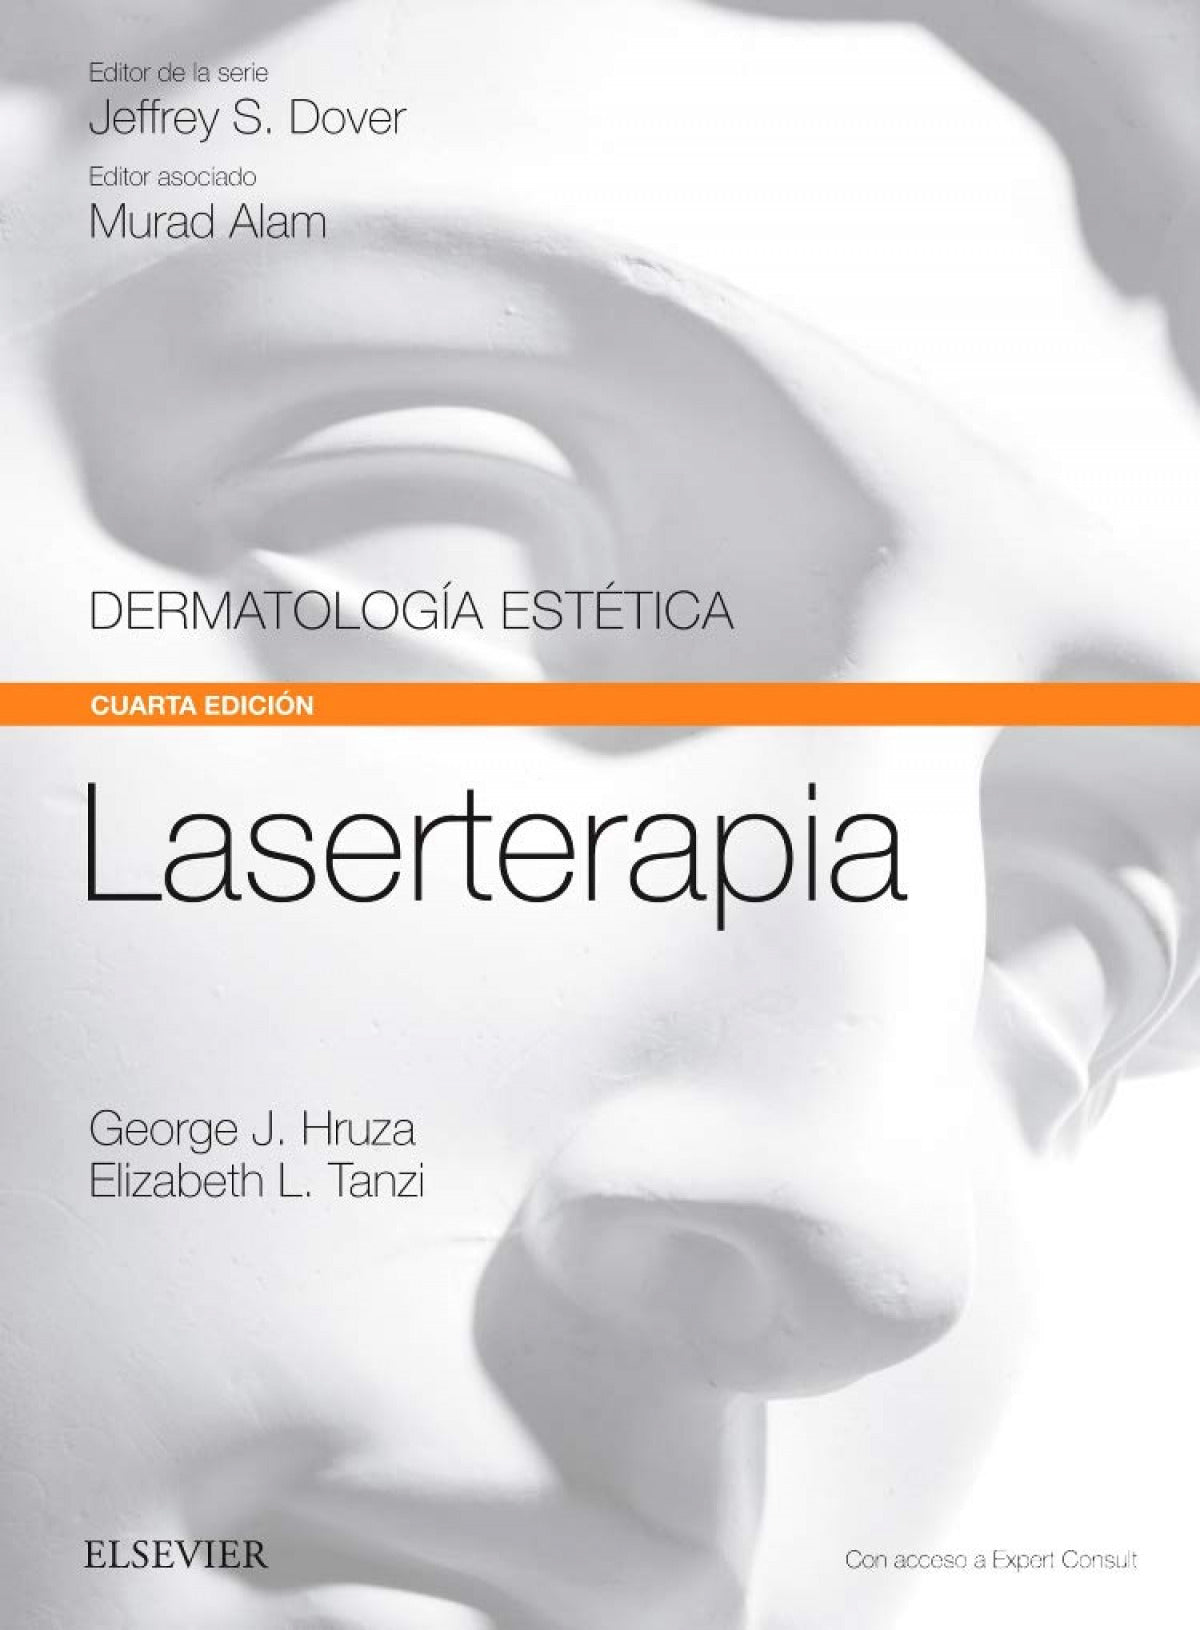 Laserterapia  (Dermatología Estética)